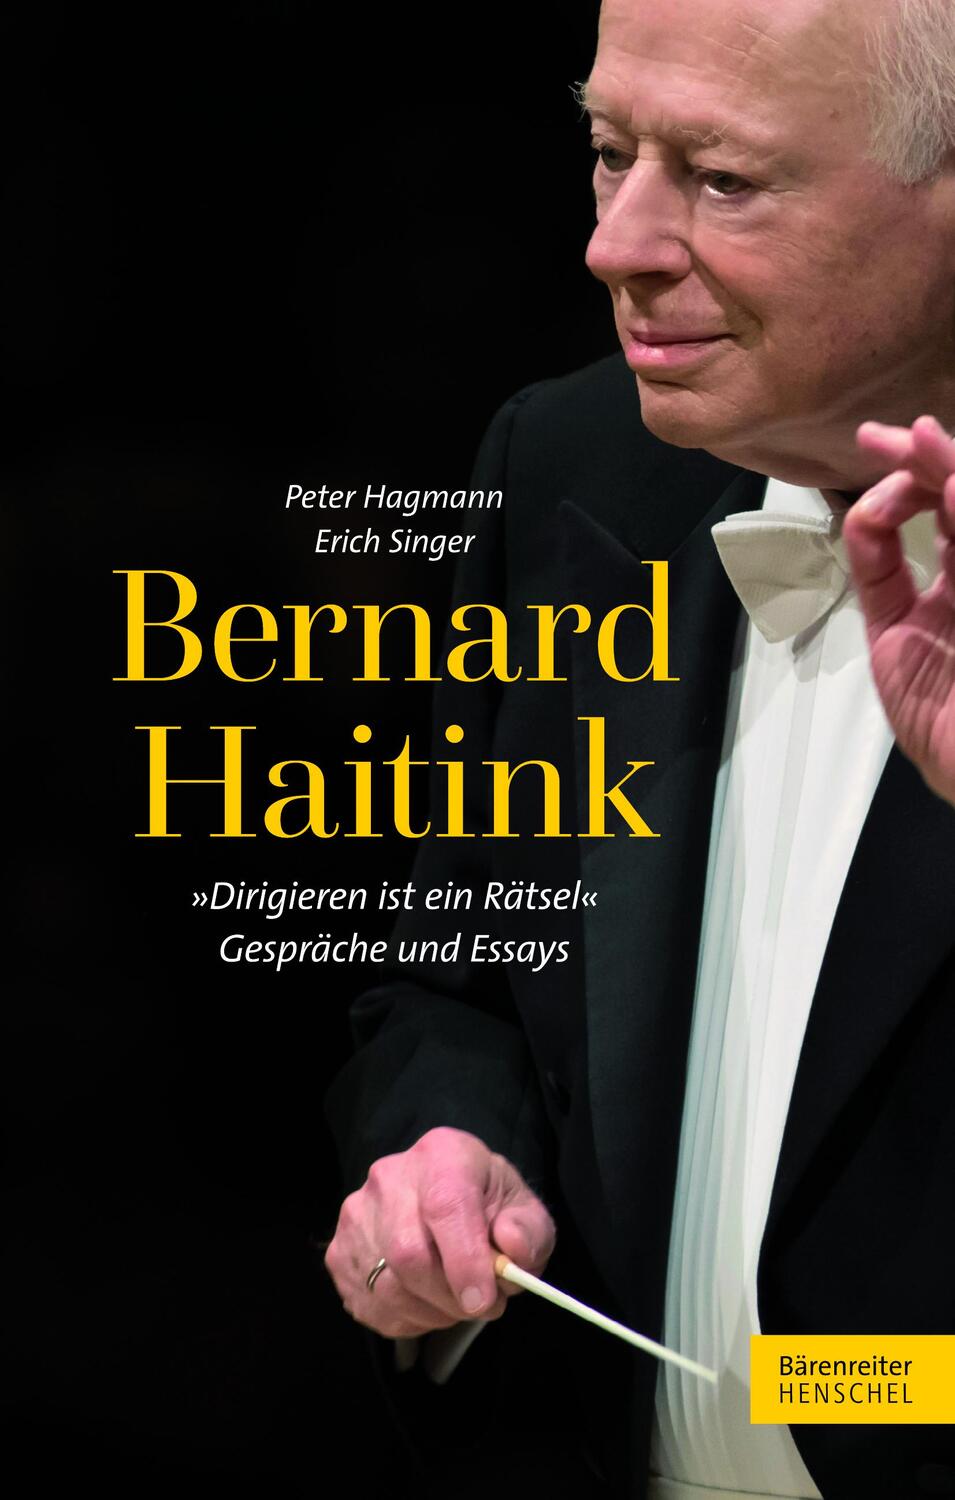 Bernard Haitink 'Dirigieren ist ein Rätsel' - Singer, Erich